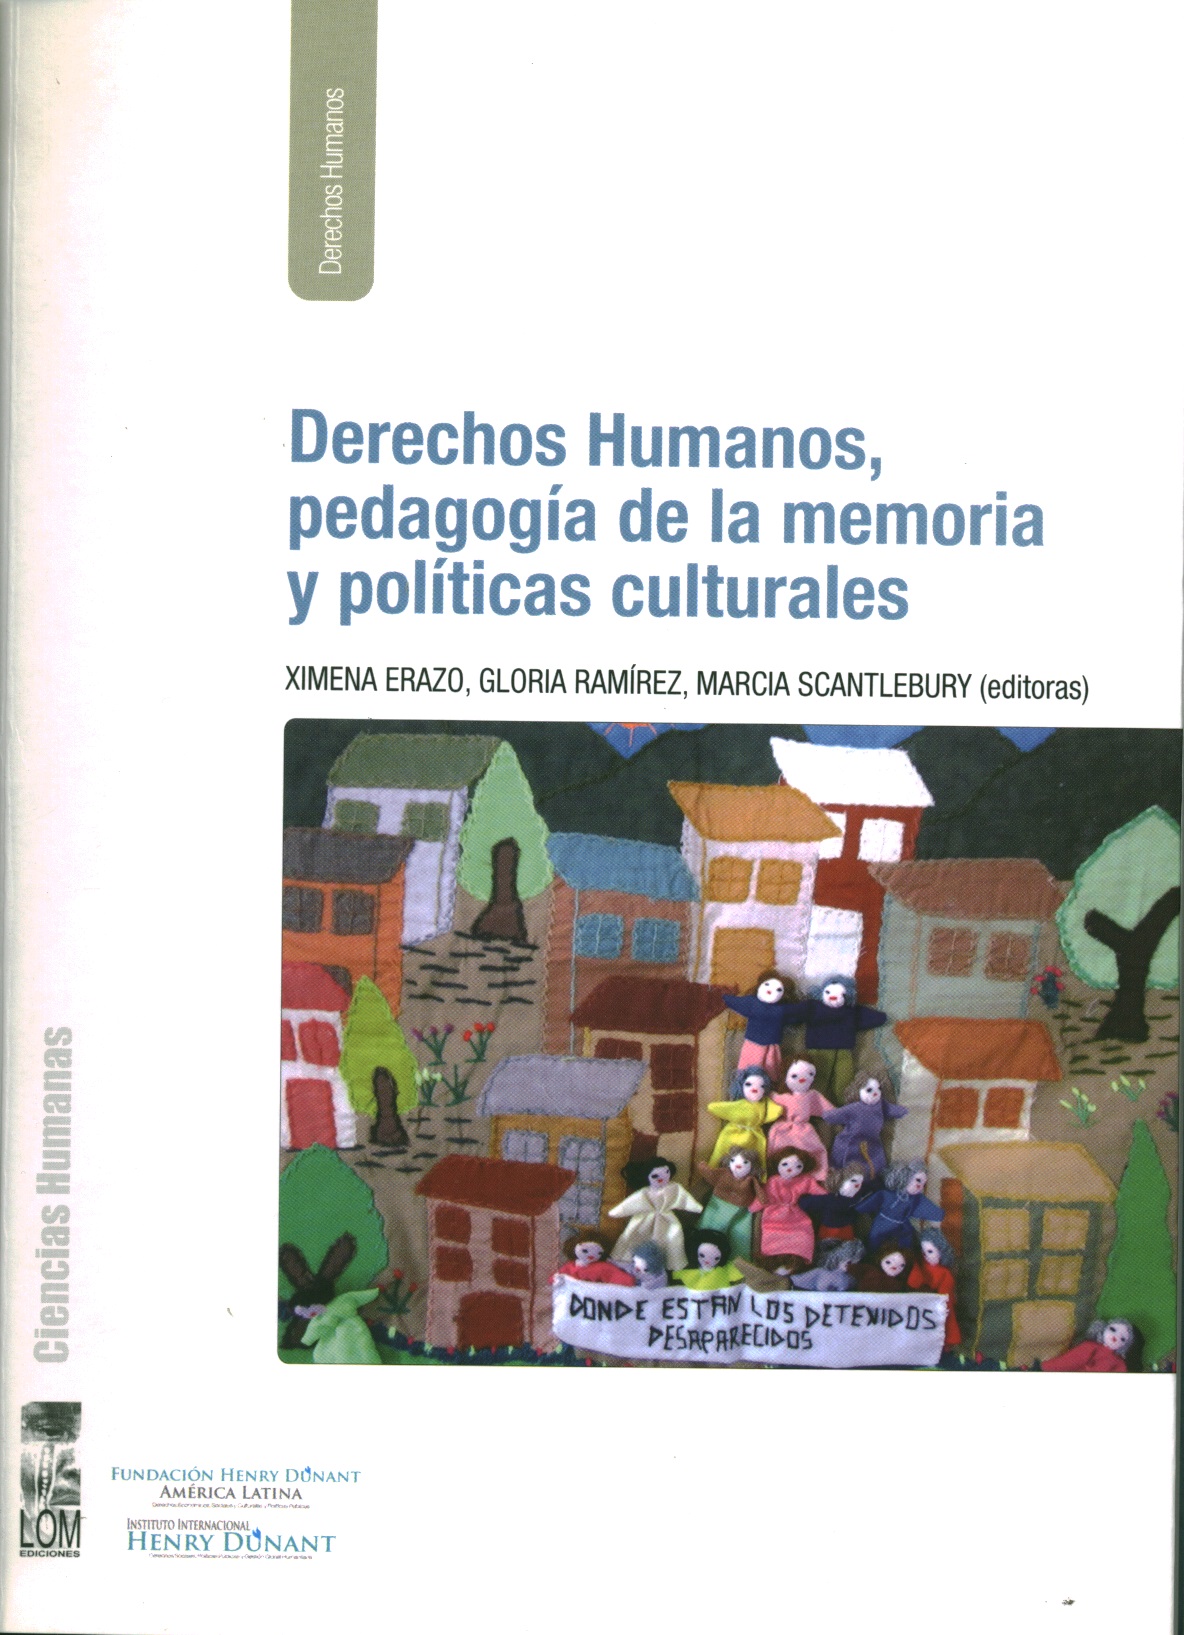 Derechos humanos, pedagogía de la memoria y políticas culturales